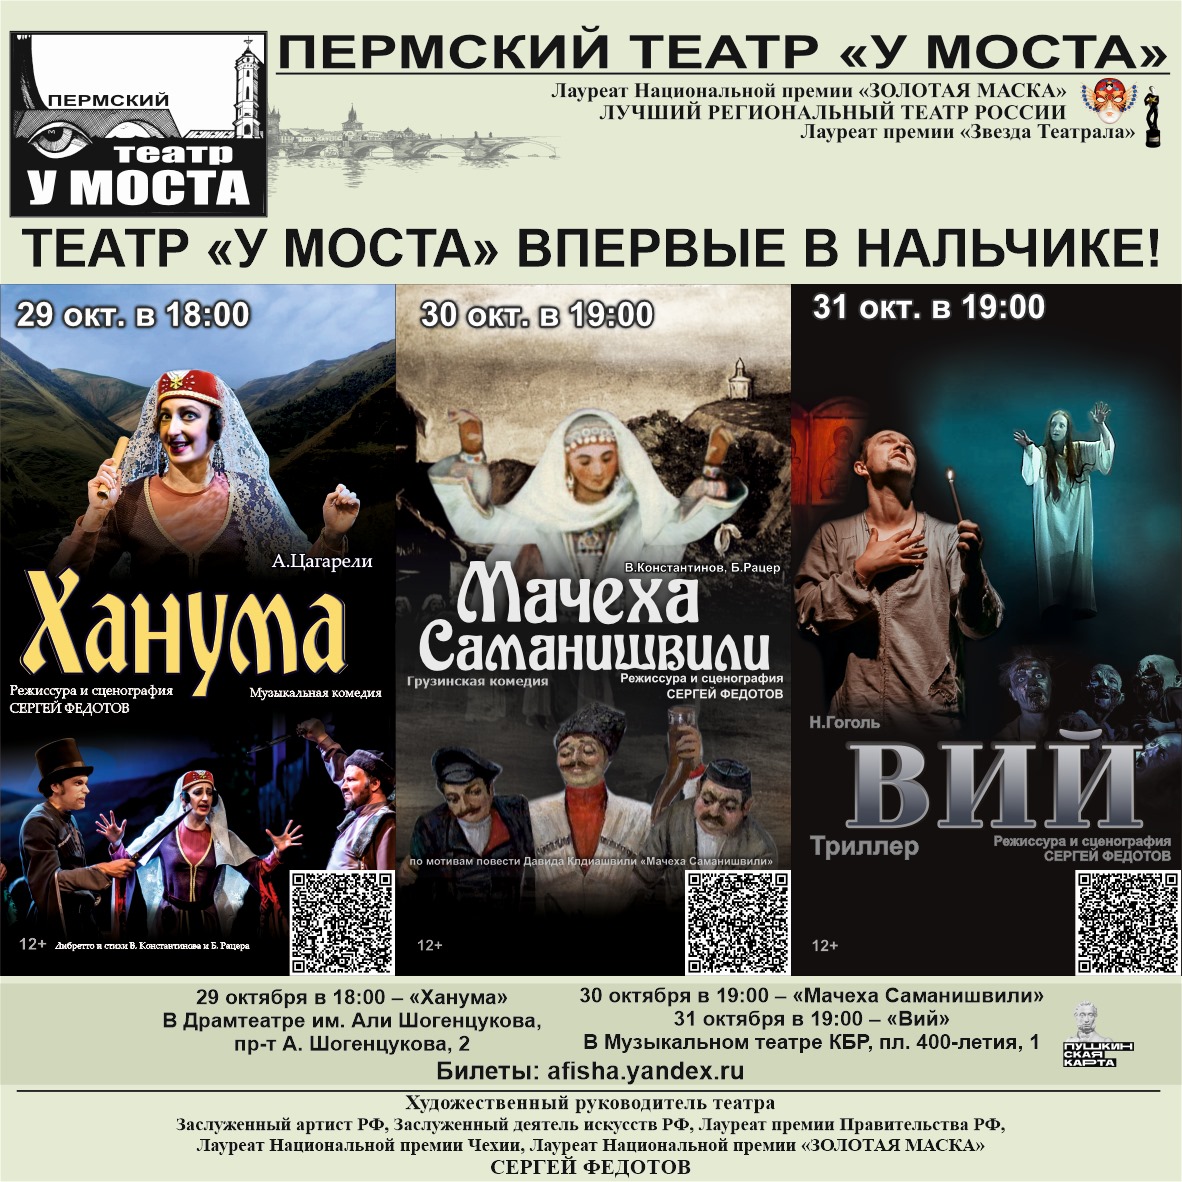 Гастроли пермского театра